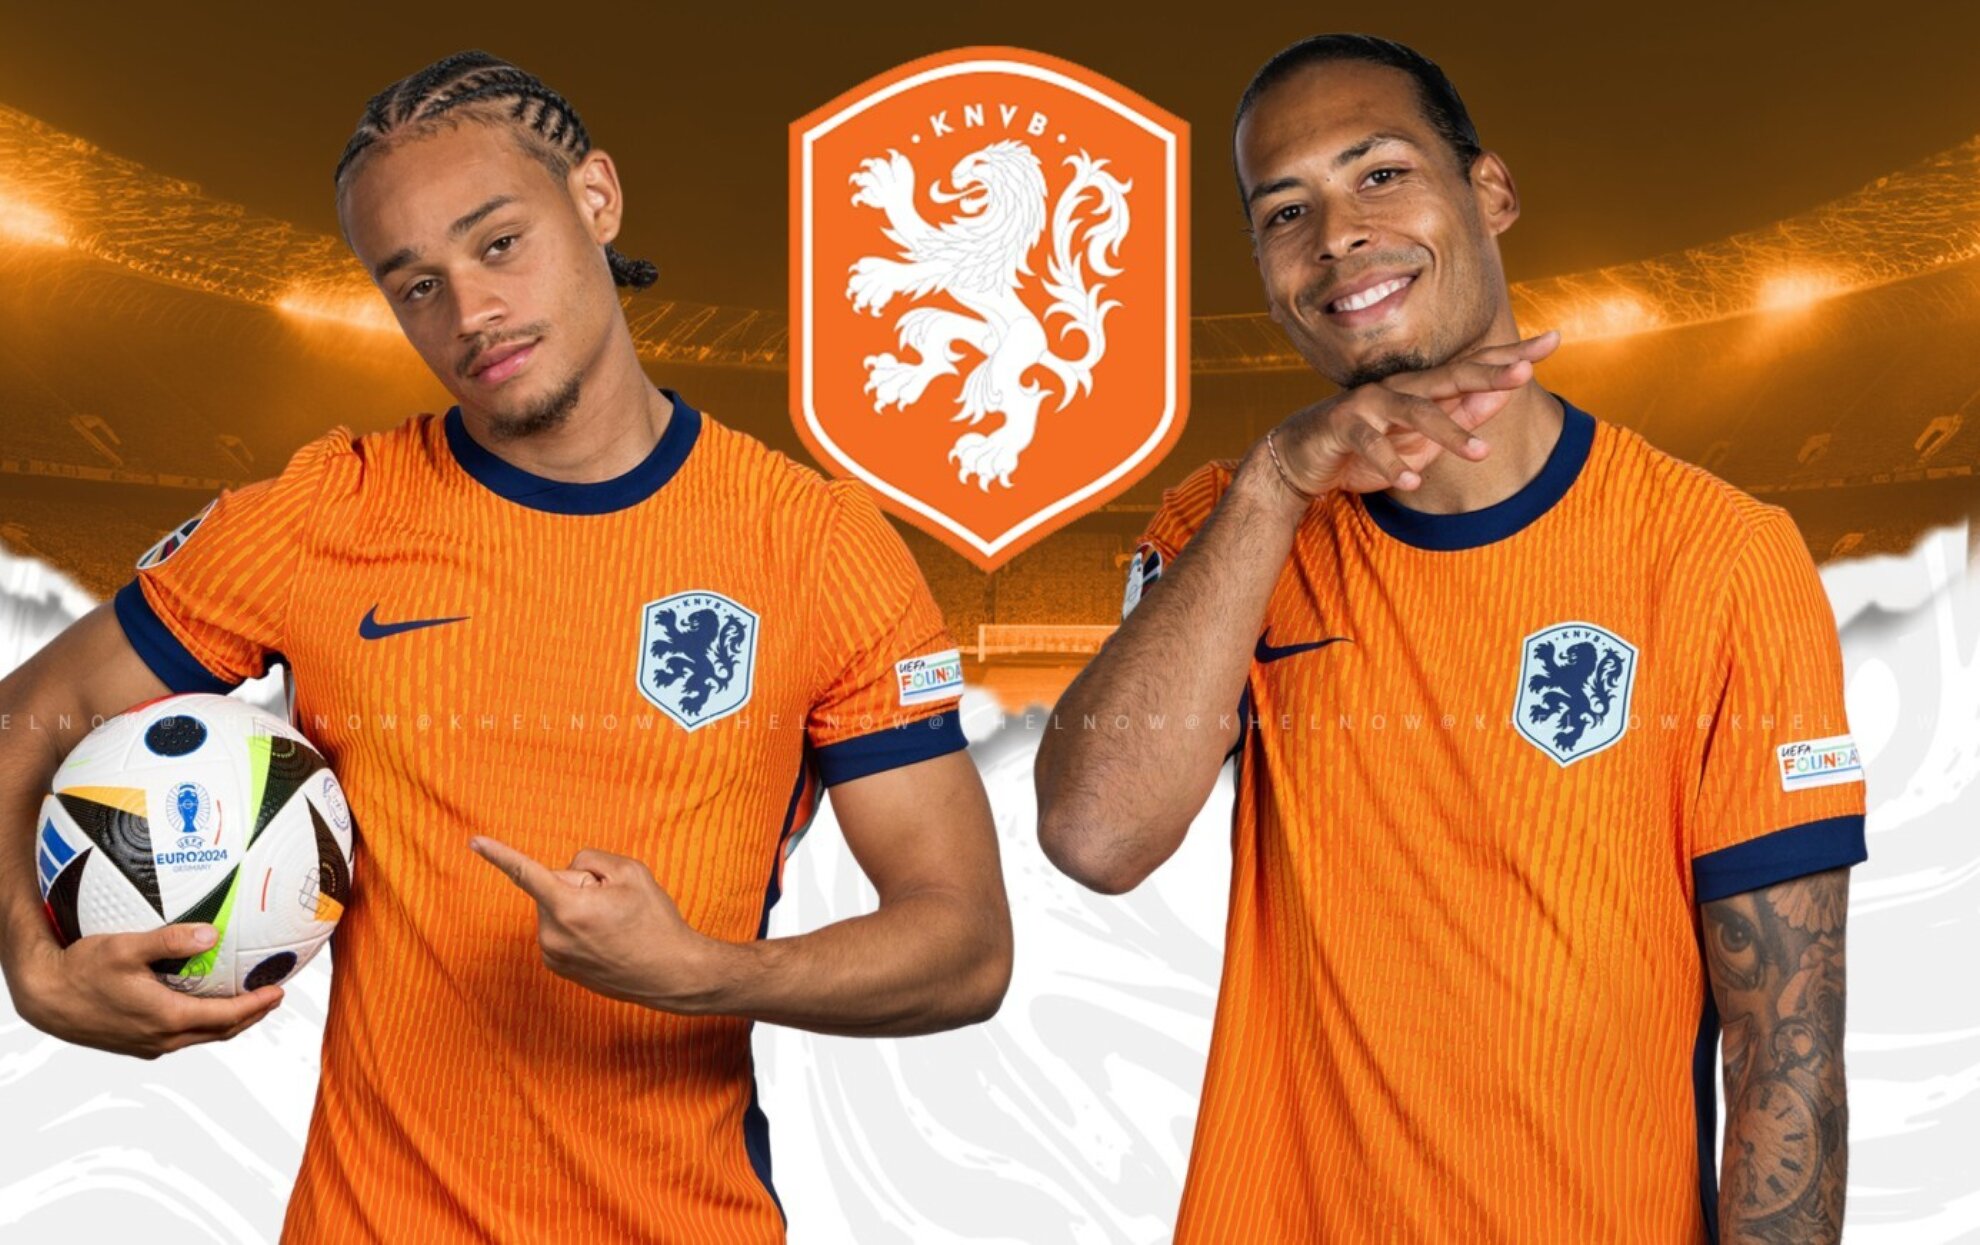 De potentiële route van Nederland naar de finale